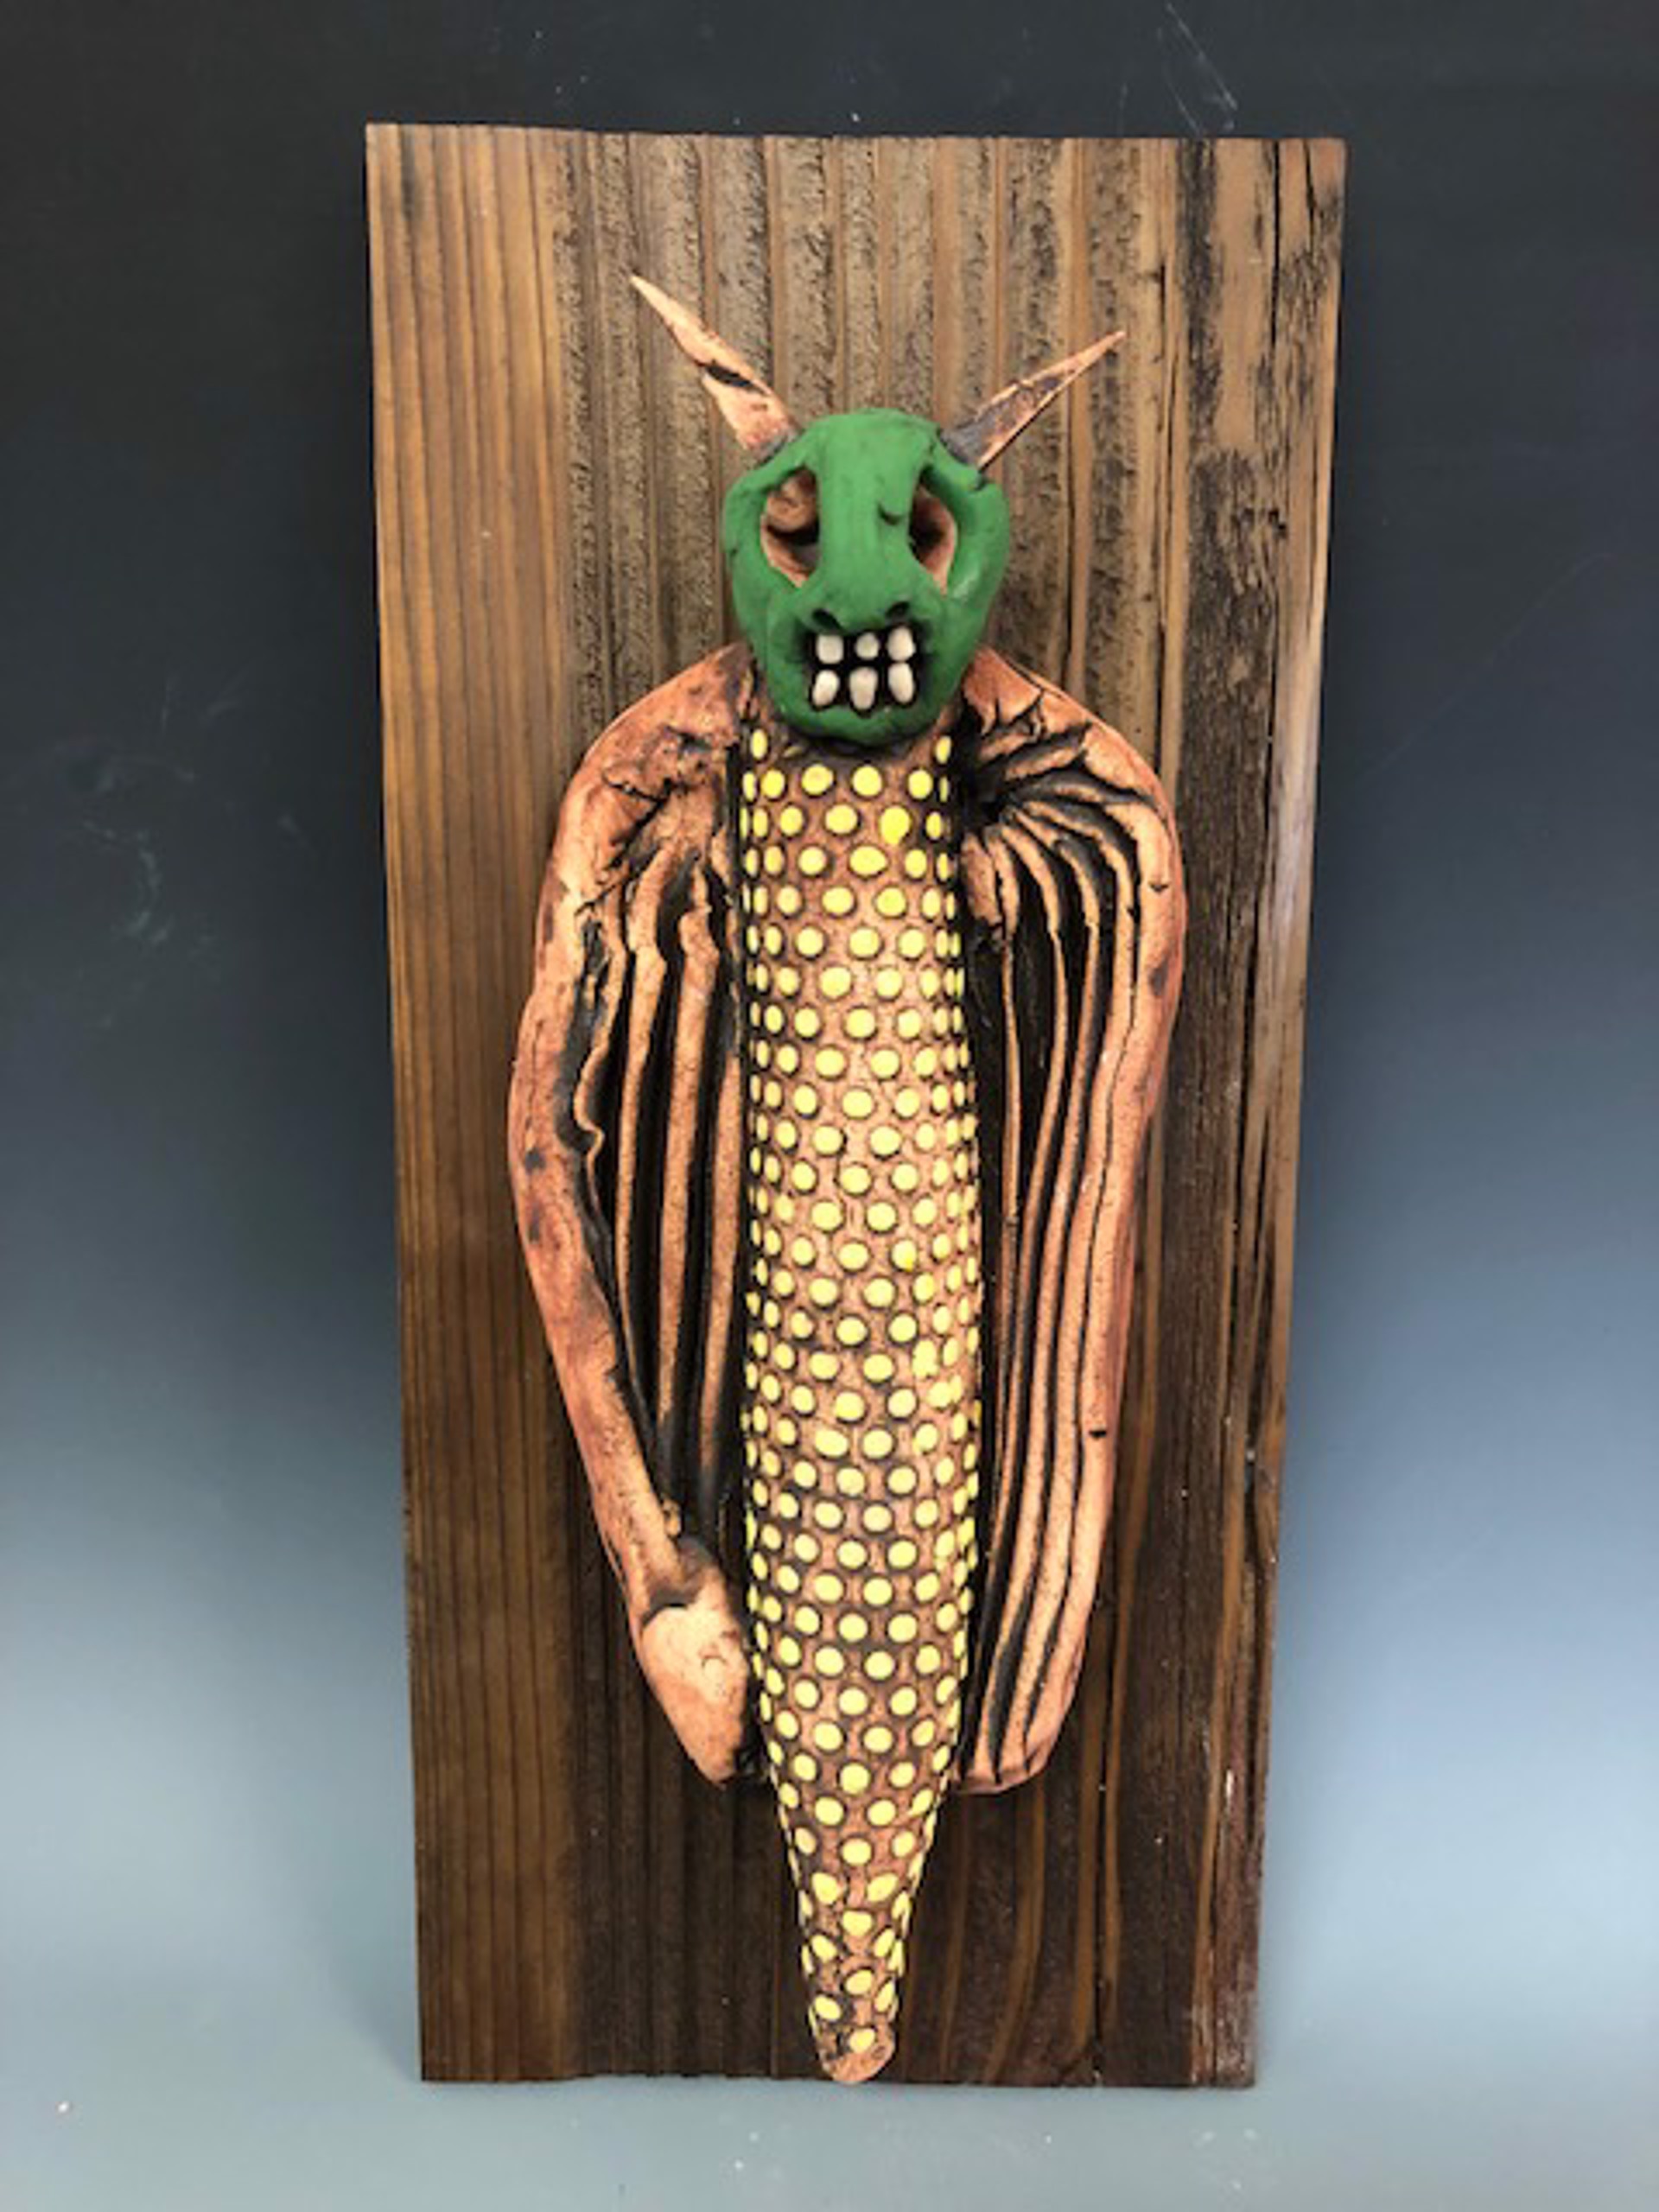 Grasshopper Corn Weasel by Jeffrey Perkins